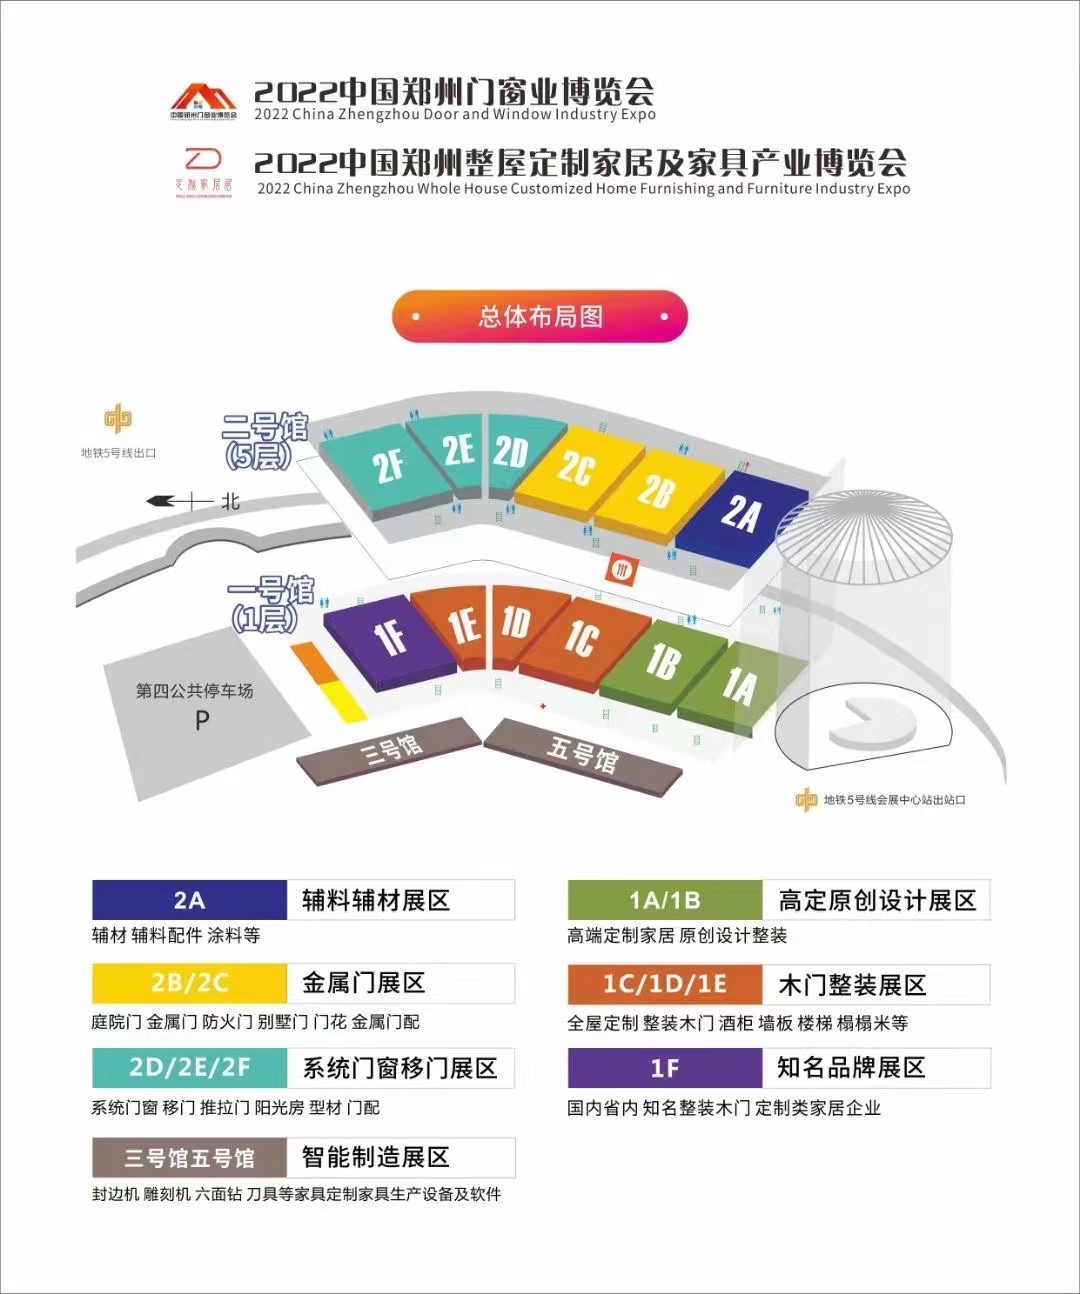 2022中国郑州门窗业博览会邀请函